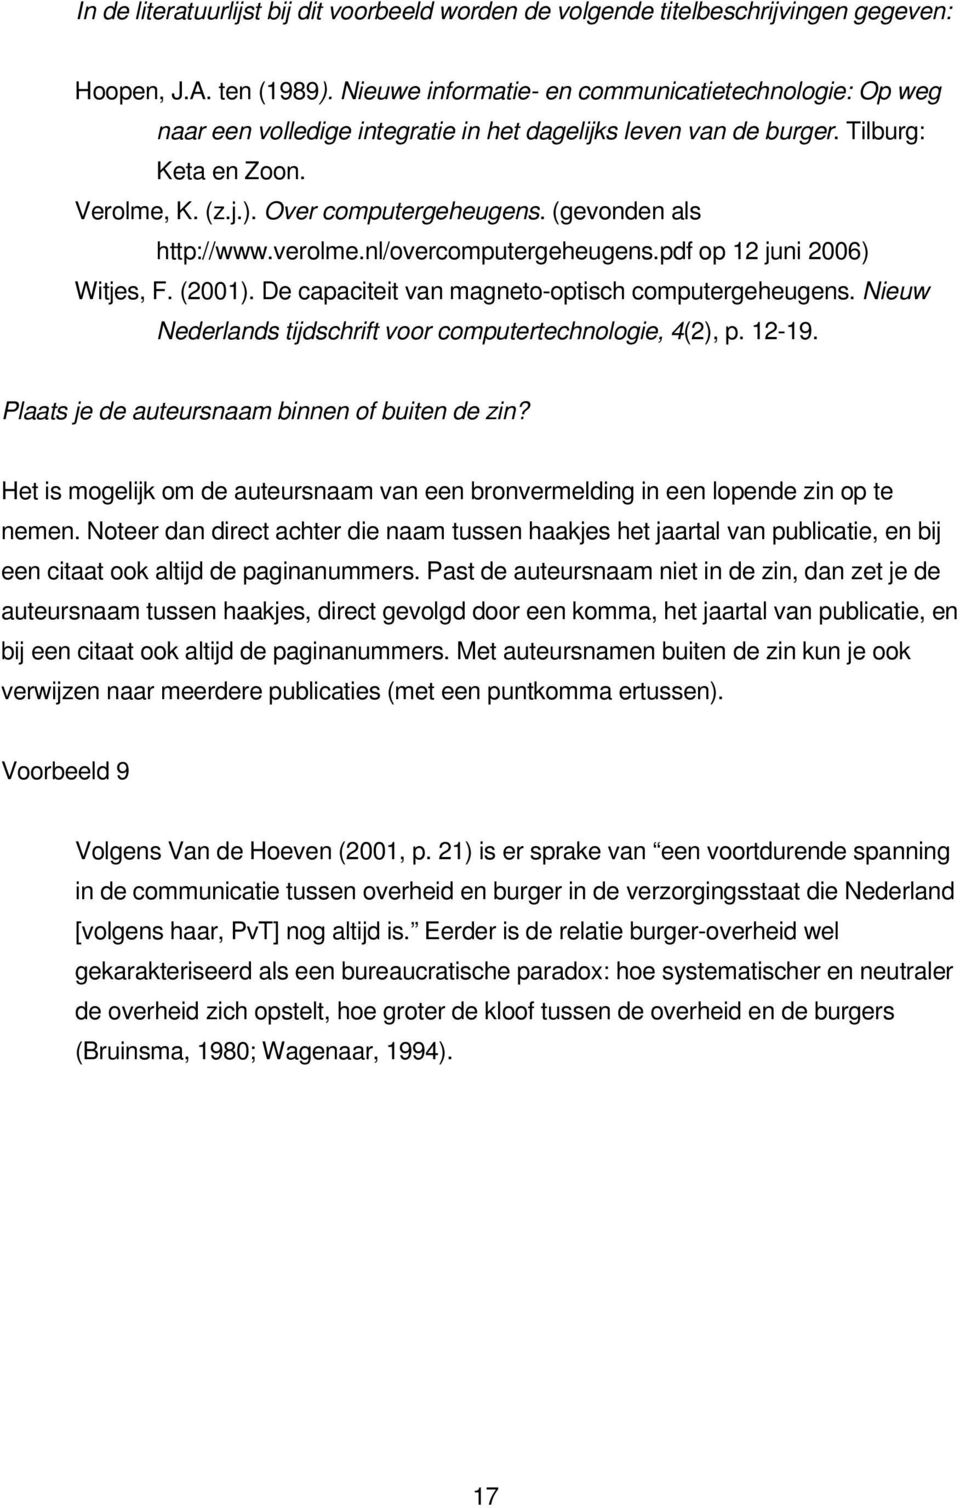 (gevonden als http://www.verolme.nl/overcomputergeheugens.pdf op 12 juni 2006) Witjes, F. (2001). De capaciteit van magneto-optisch computergeheugens.